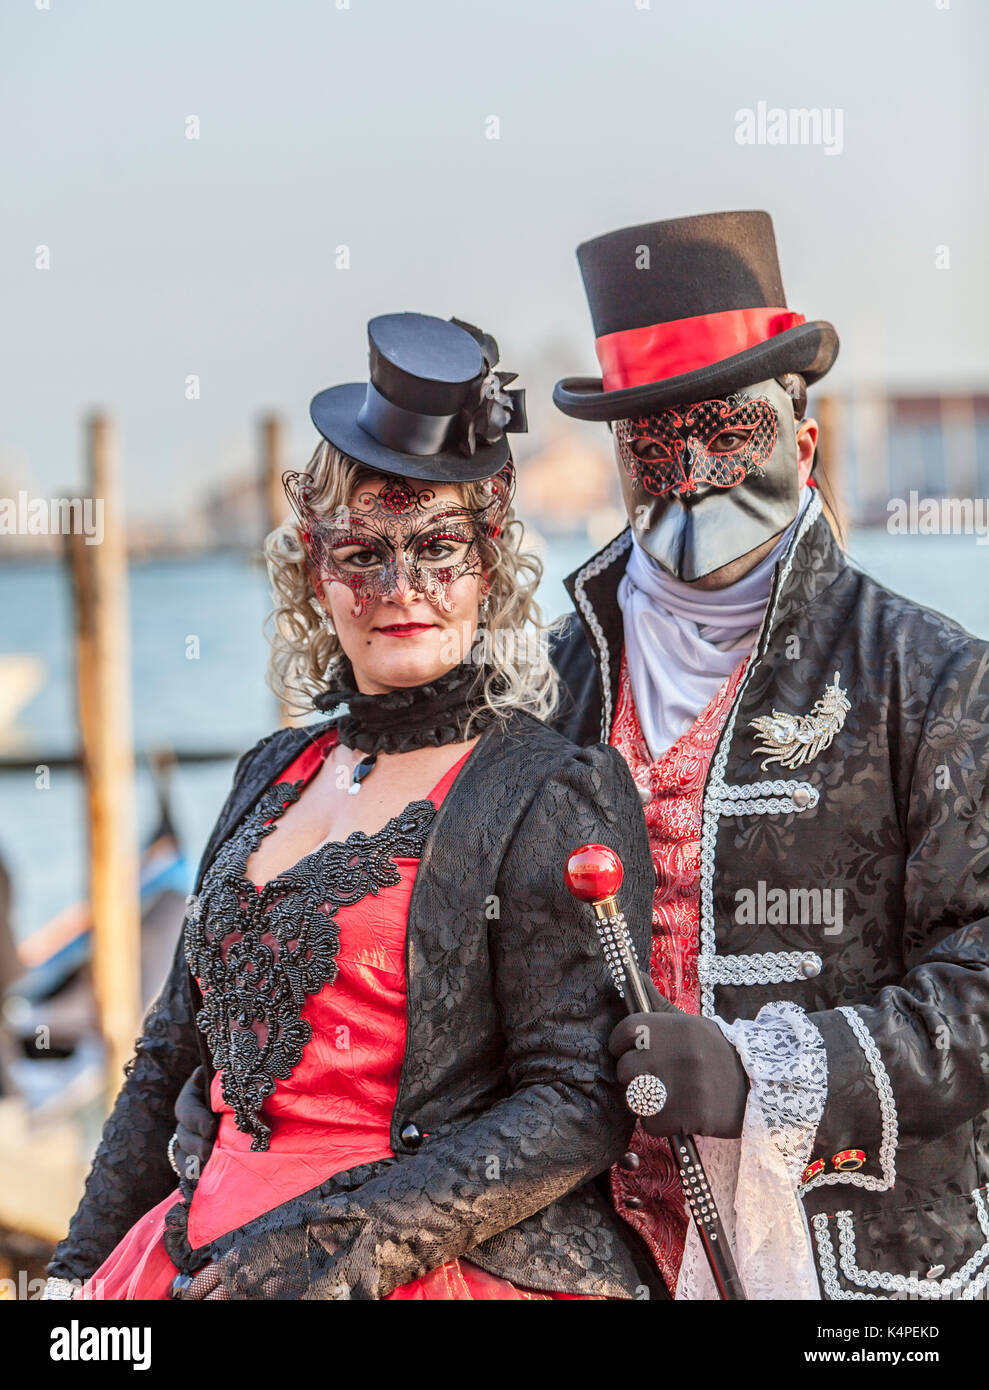 Venedig, Italien - 18 Februar 2012: Umwelt Porträt eines nicht identifizierten Paar mit schwarzen Verkleidungen und traditionelle Venezianische Masken während der Stockfoto